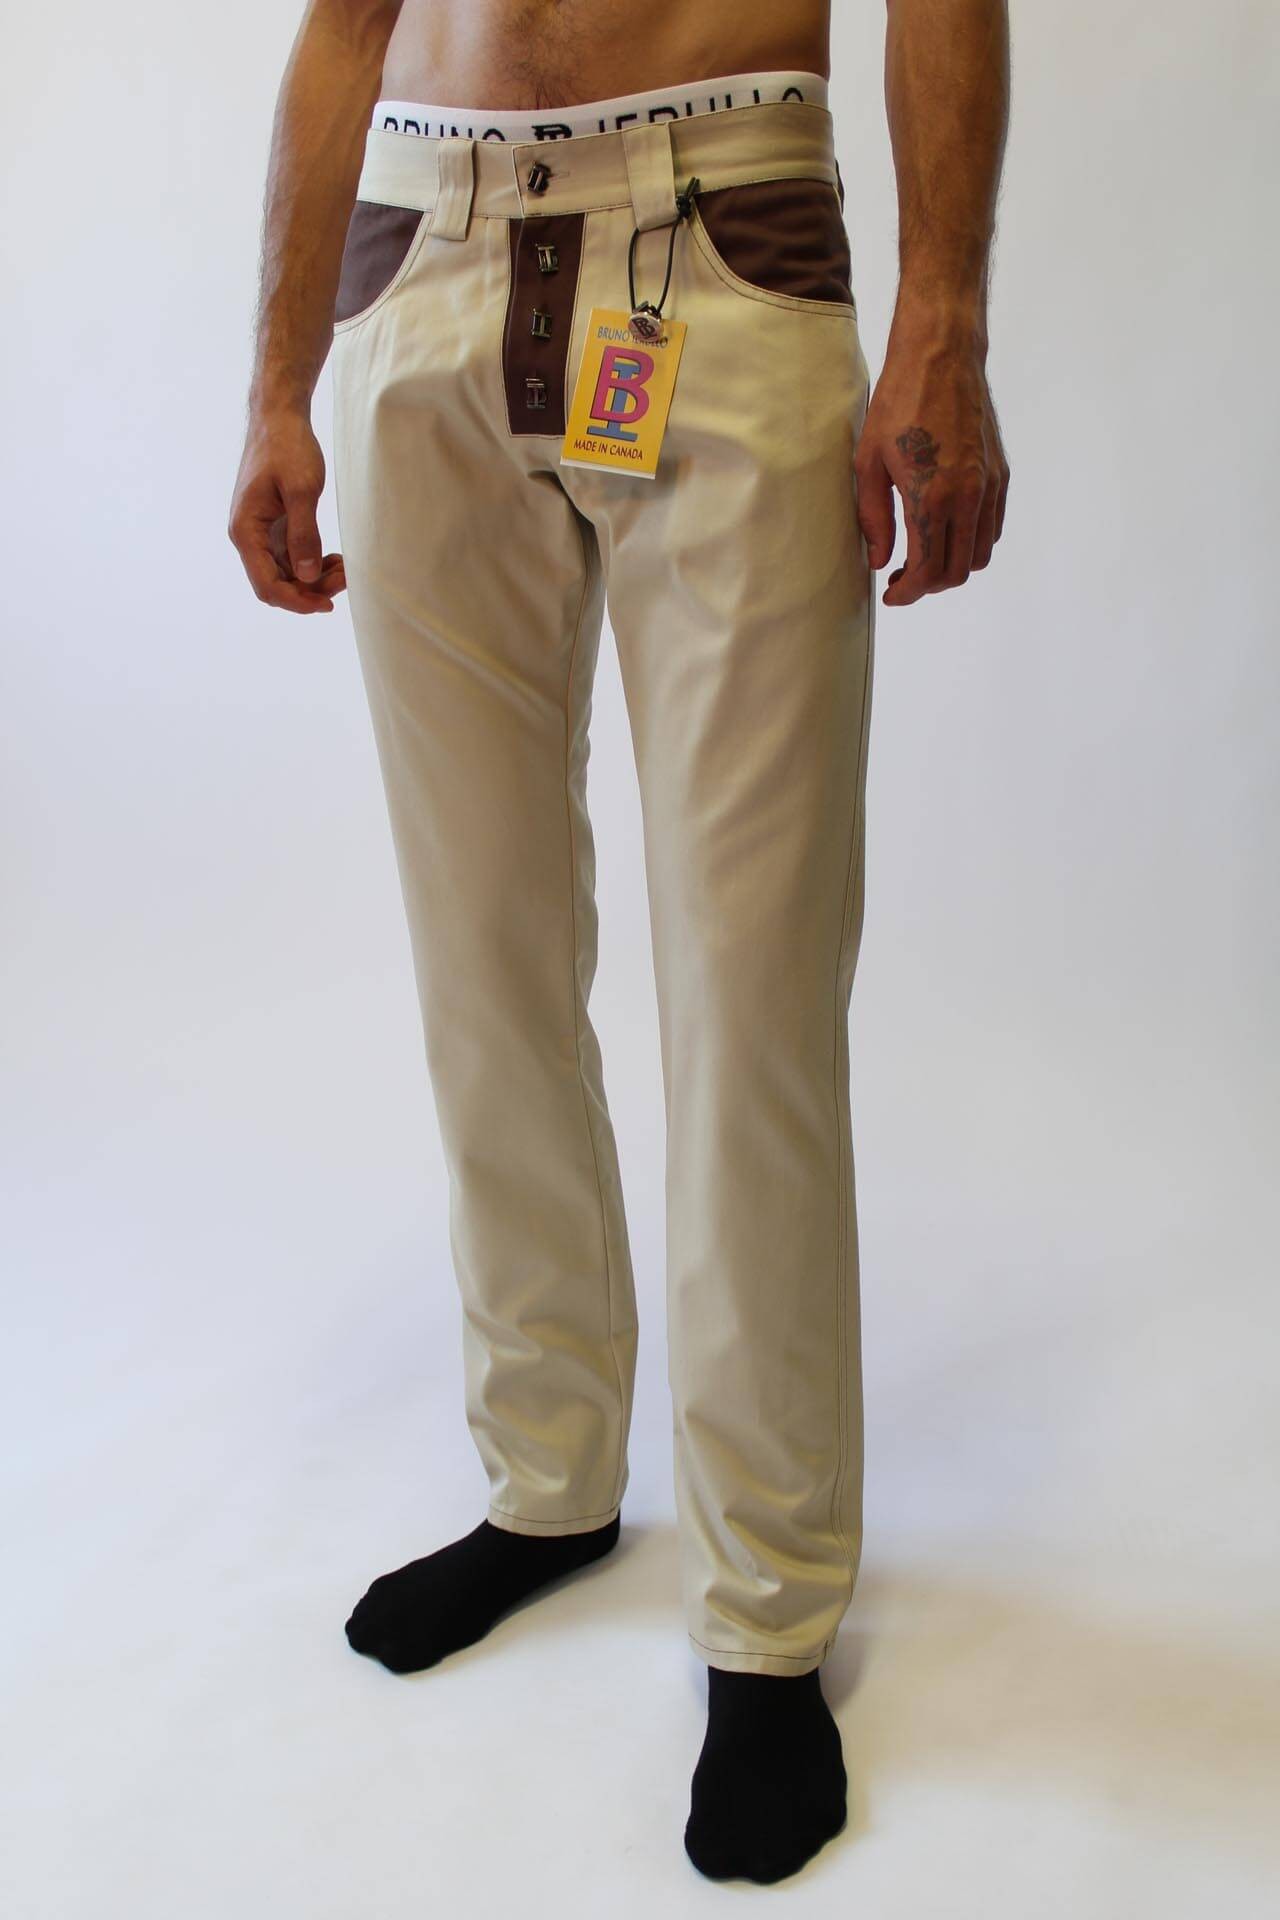 INGVY Mens Jeans Fashion Men Jeans Cowboy Straight Loose Baggy Harem Denim  Pants Casual Cotton Wide Leg Trousers Blue Plus (Color : Blue, Size : Size  44) : Amazon.com.au: Clothing, Shoes & Accessories